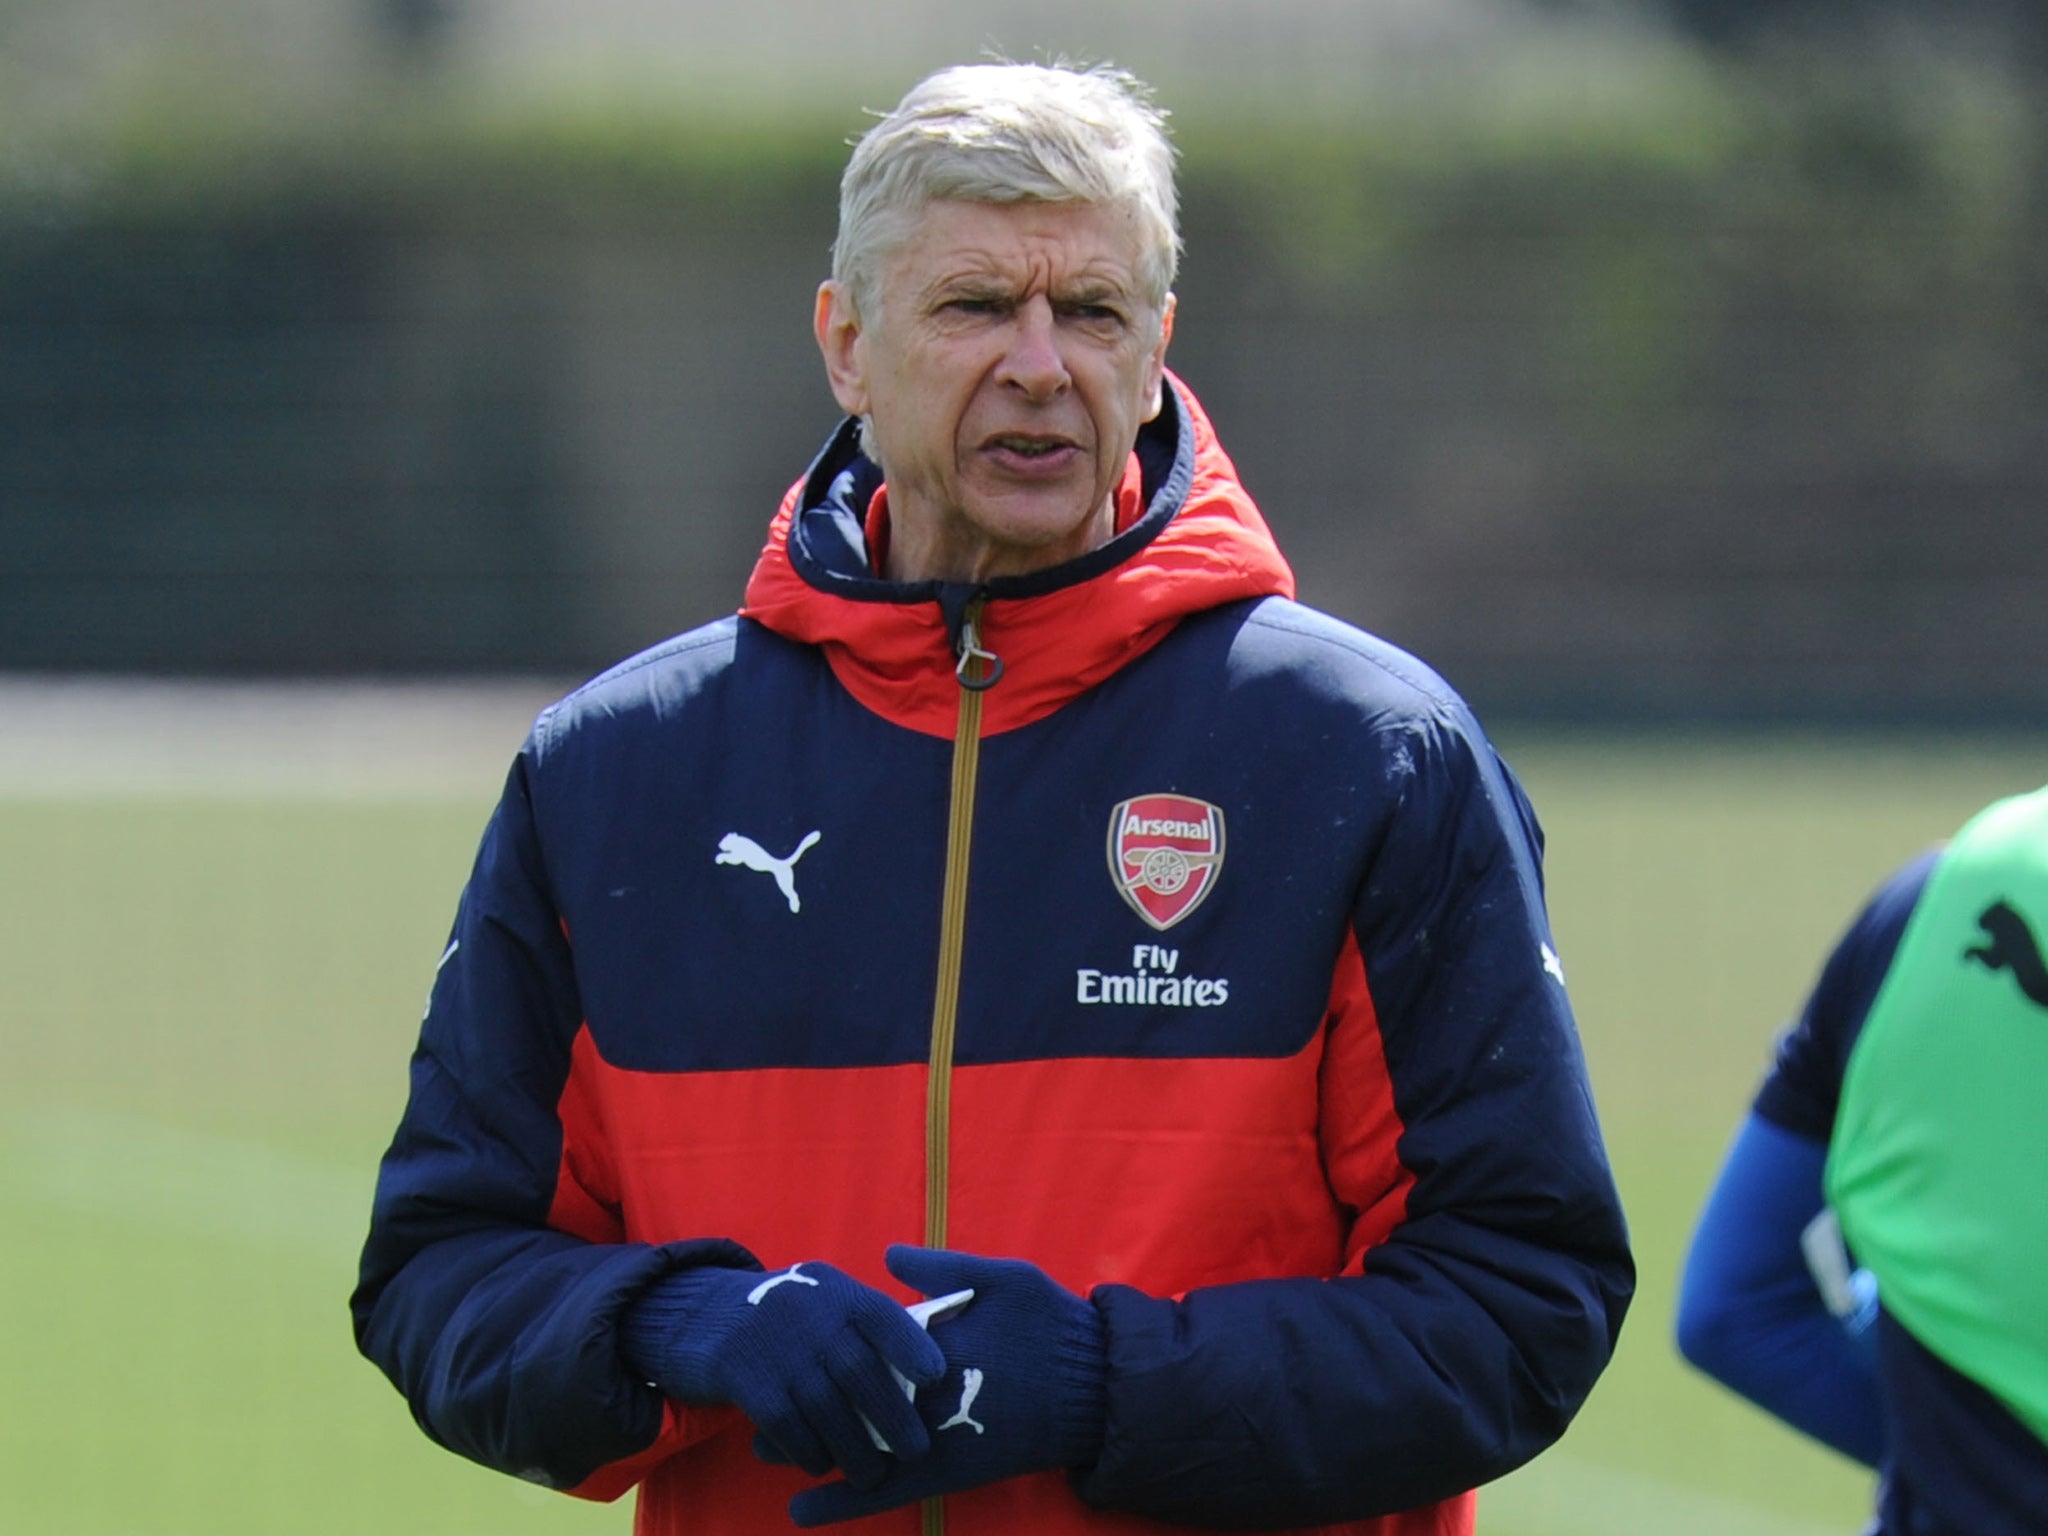 Arsenal manager Arsene Wenger takes training on Saturday